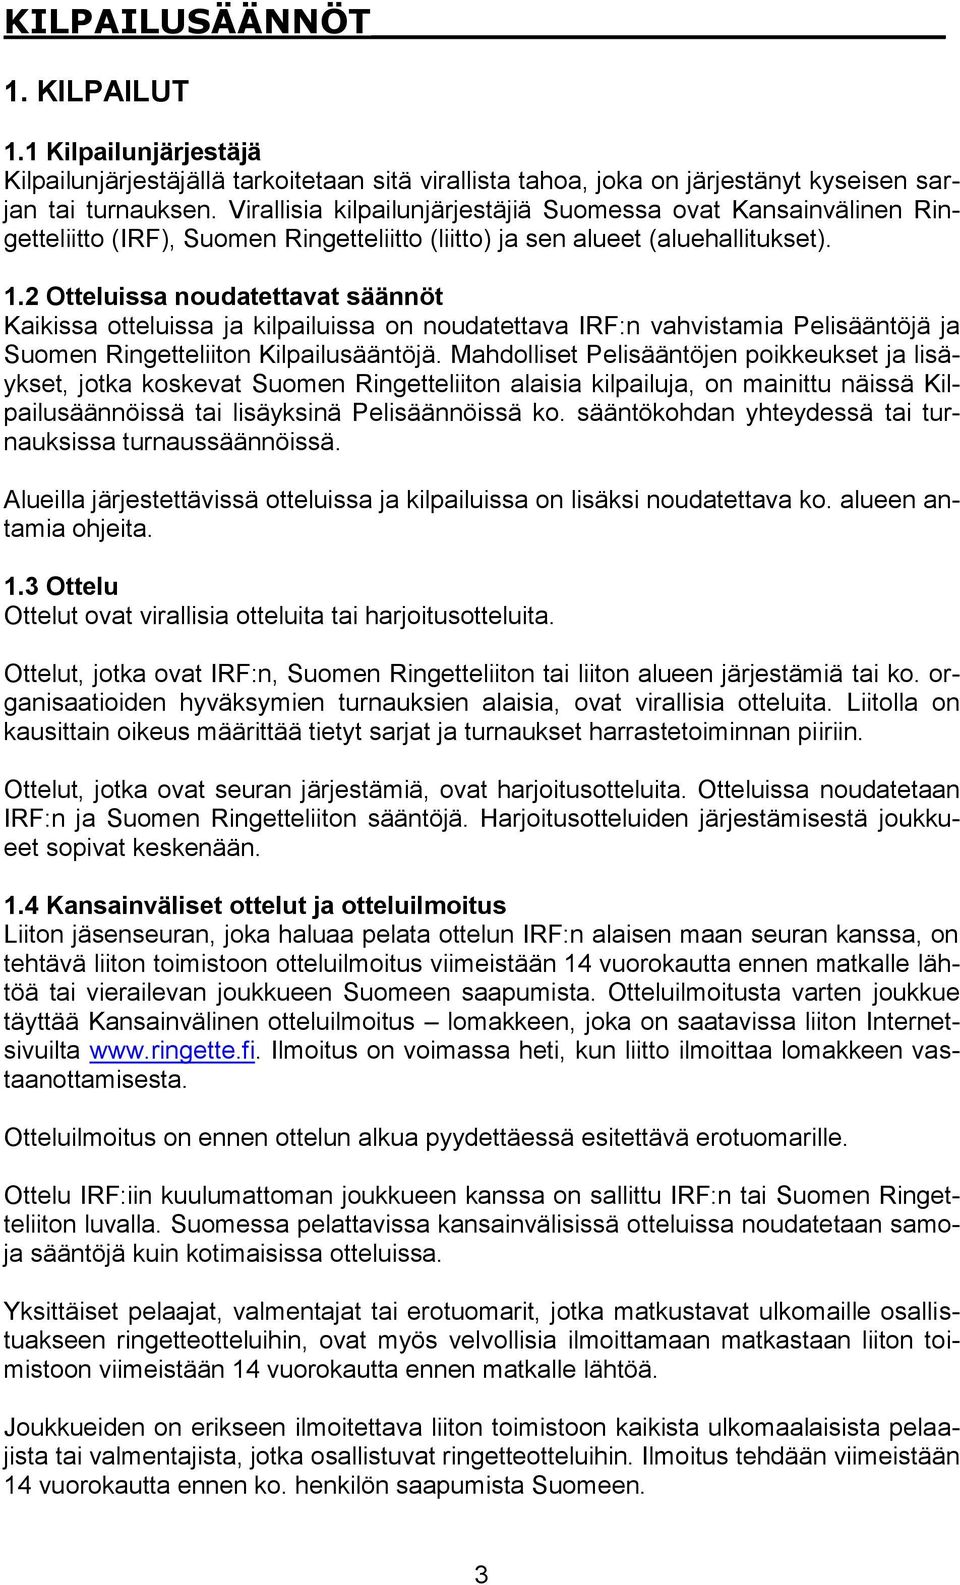 2 Otteluissa noudatettavat säännöt Kaikissa otteluissa ja kilpailuissa on noudatettava IRF:n vahvistamia Pelisääntöjä ja Suomen Ringetteliiton Kilpailusääntöjä.